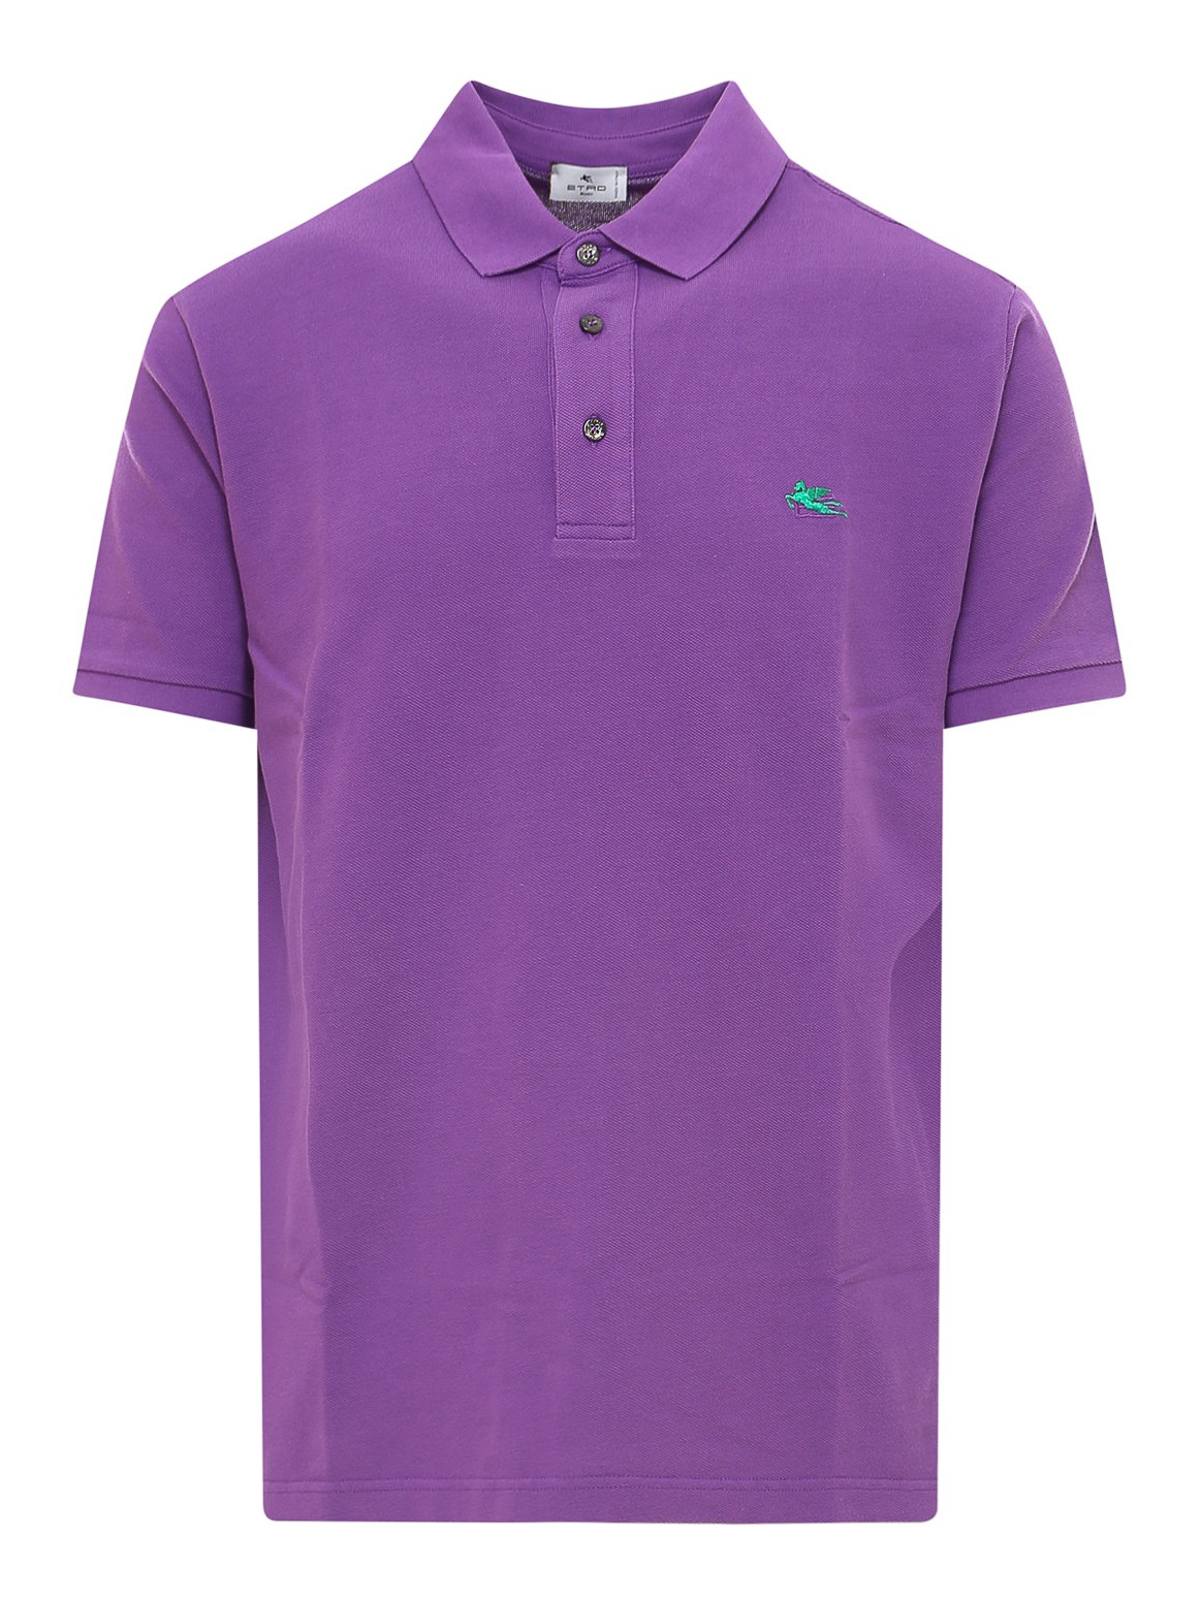 ポロシャツ Etro - ポロシャツ - 紫 - 1Y99998700400